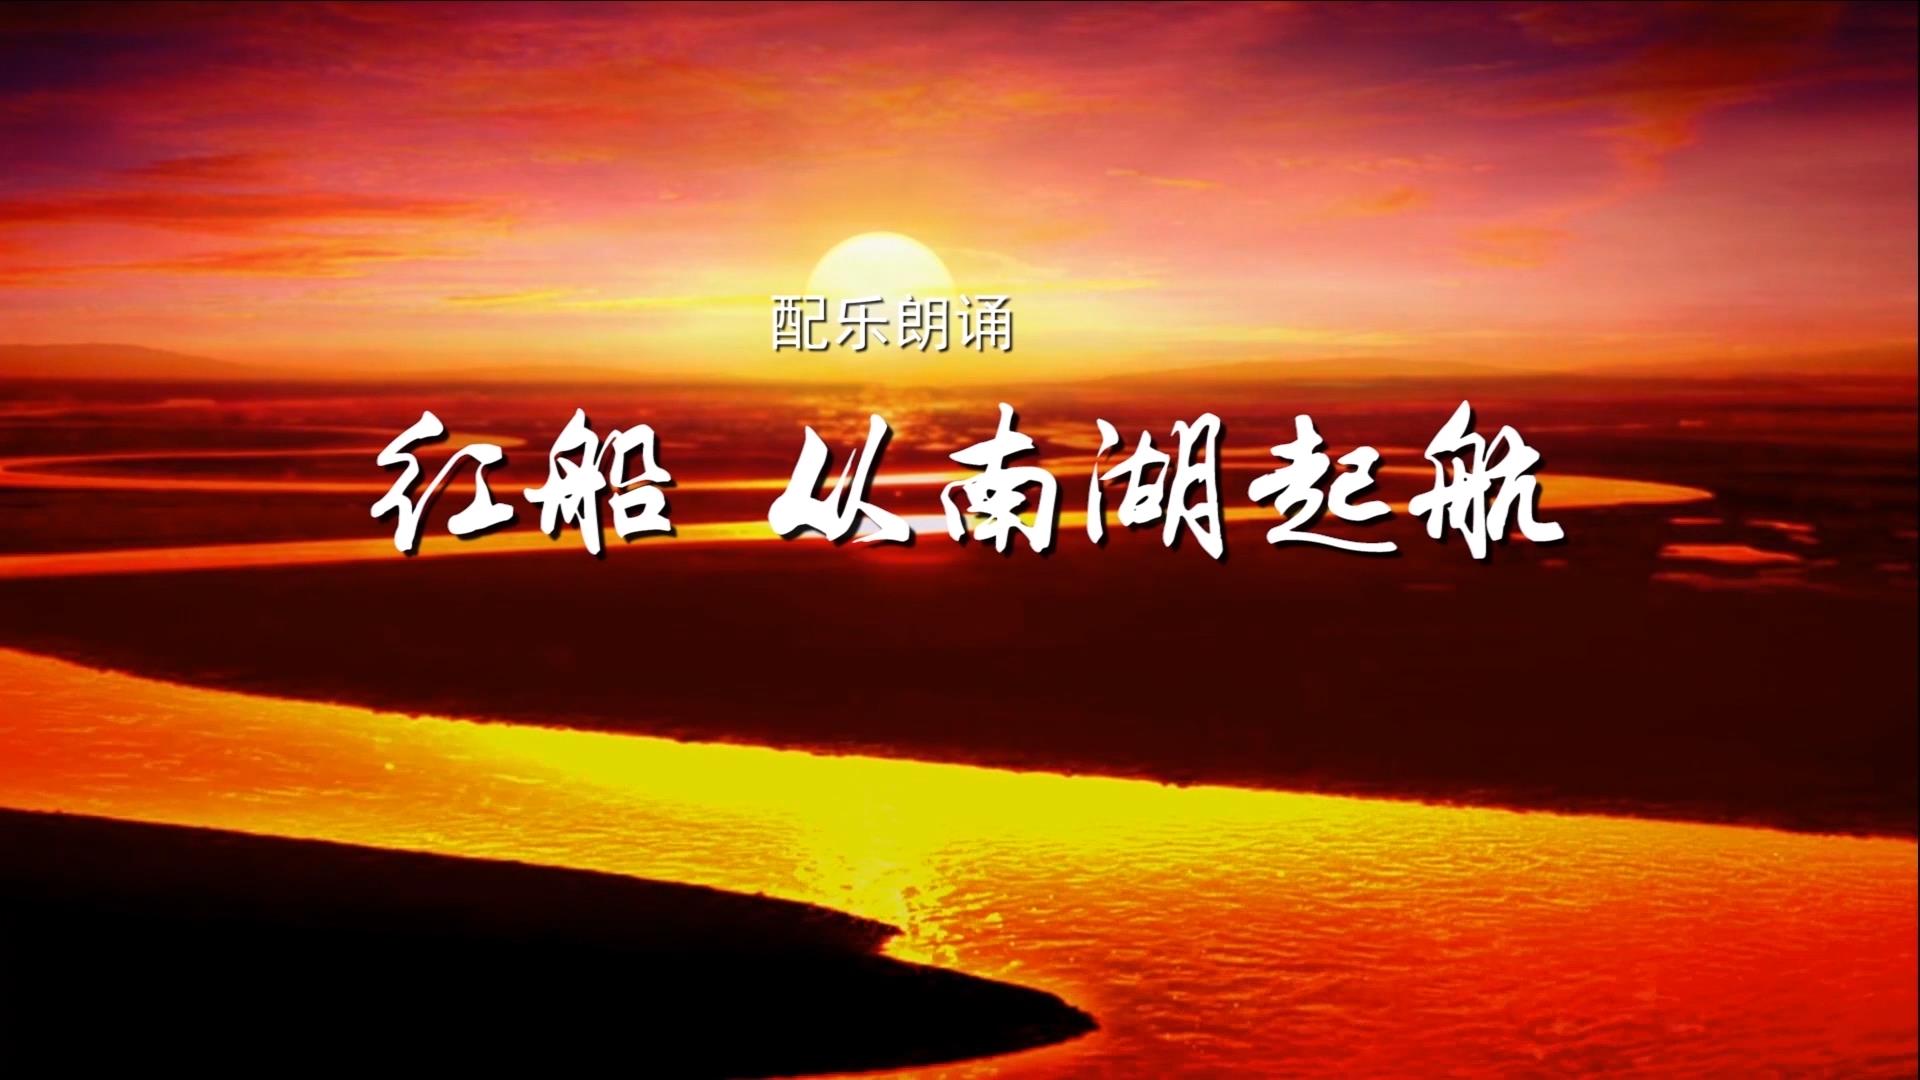 红船从南湖起航 建党百年诗歌朗诵配乐伴奏舞台演出LED背景大屏幕视频素材TV